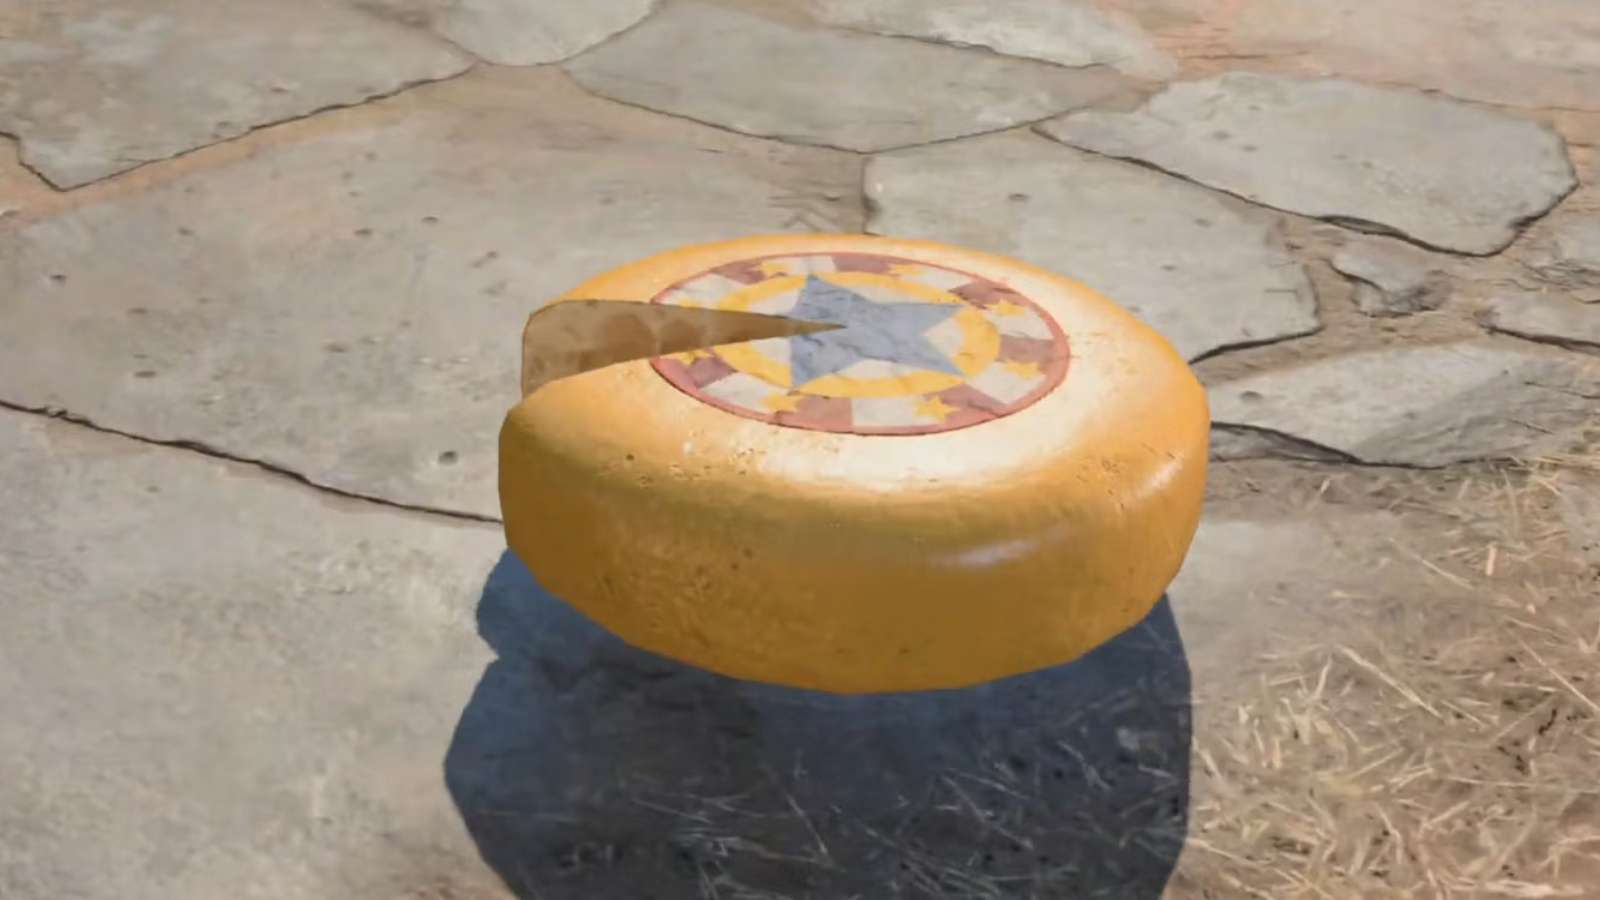 A cheese wheel in Baldur's Gate 3